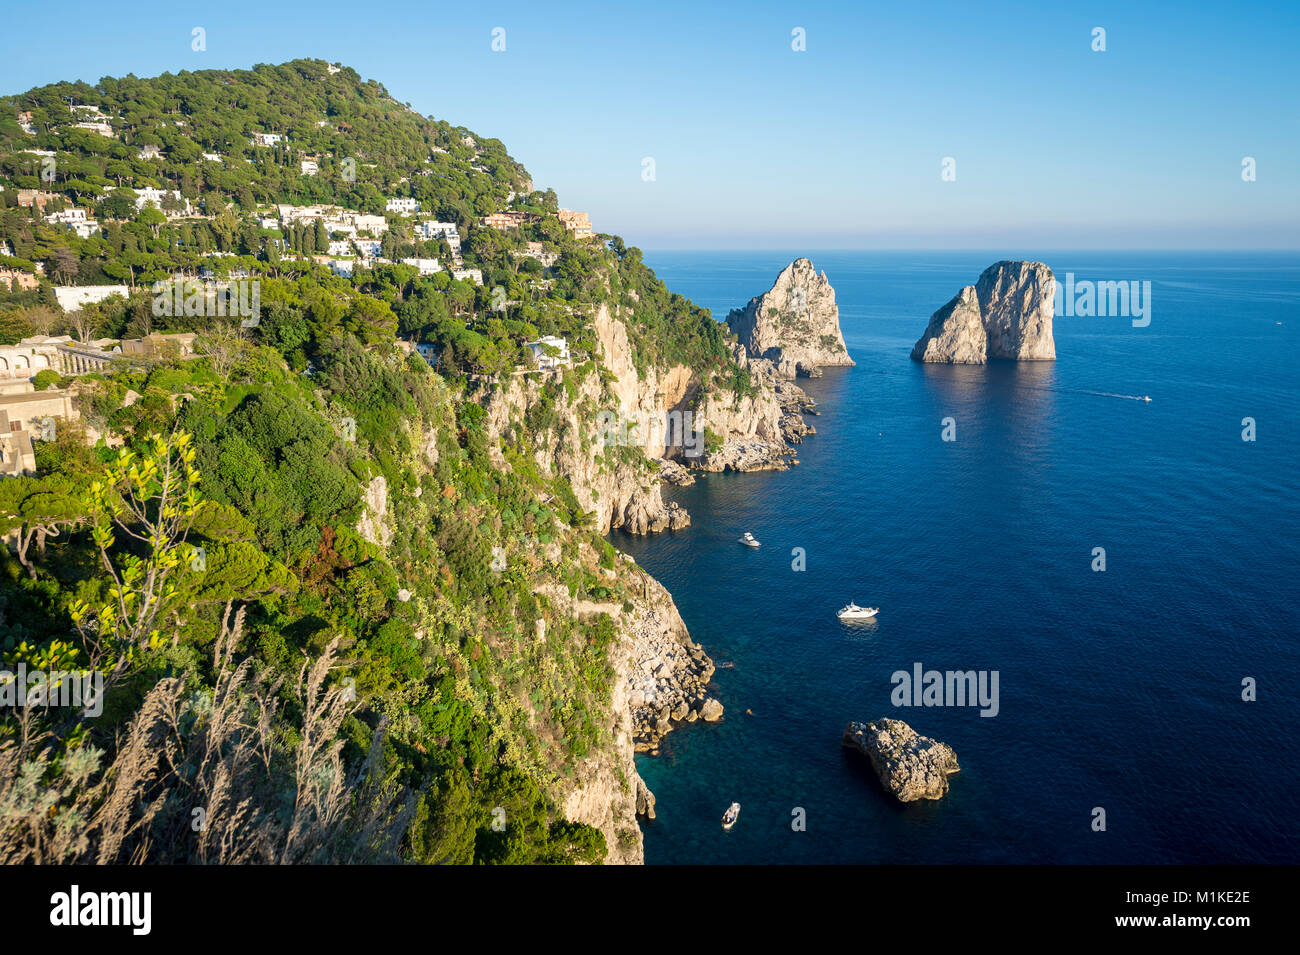 Vista panorámica brillante de los míticos farallones de rocas desde el acantilado trail en la isla mediterránea de Capri, Italia Foto de stock